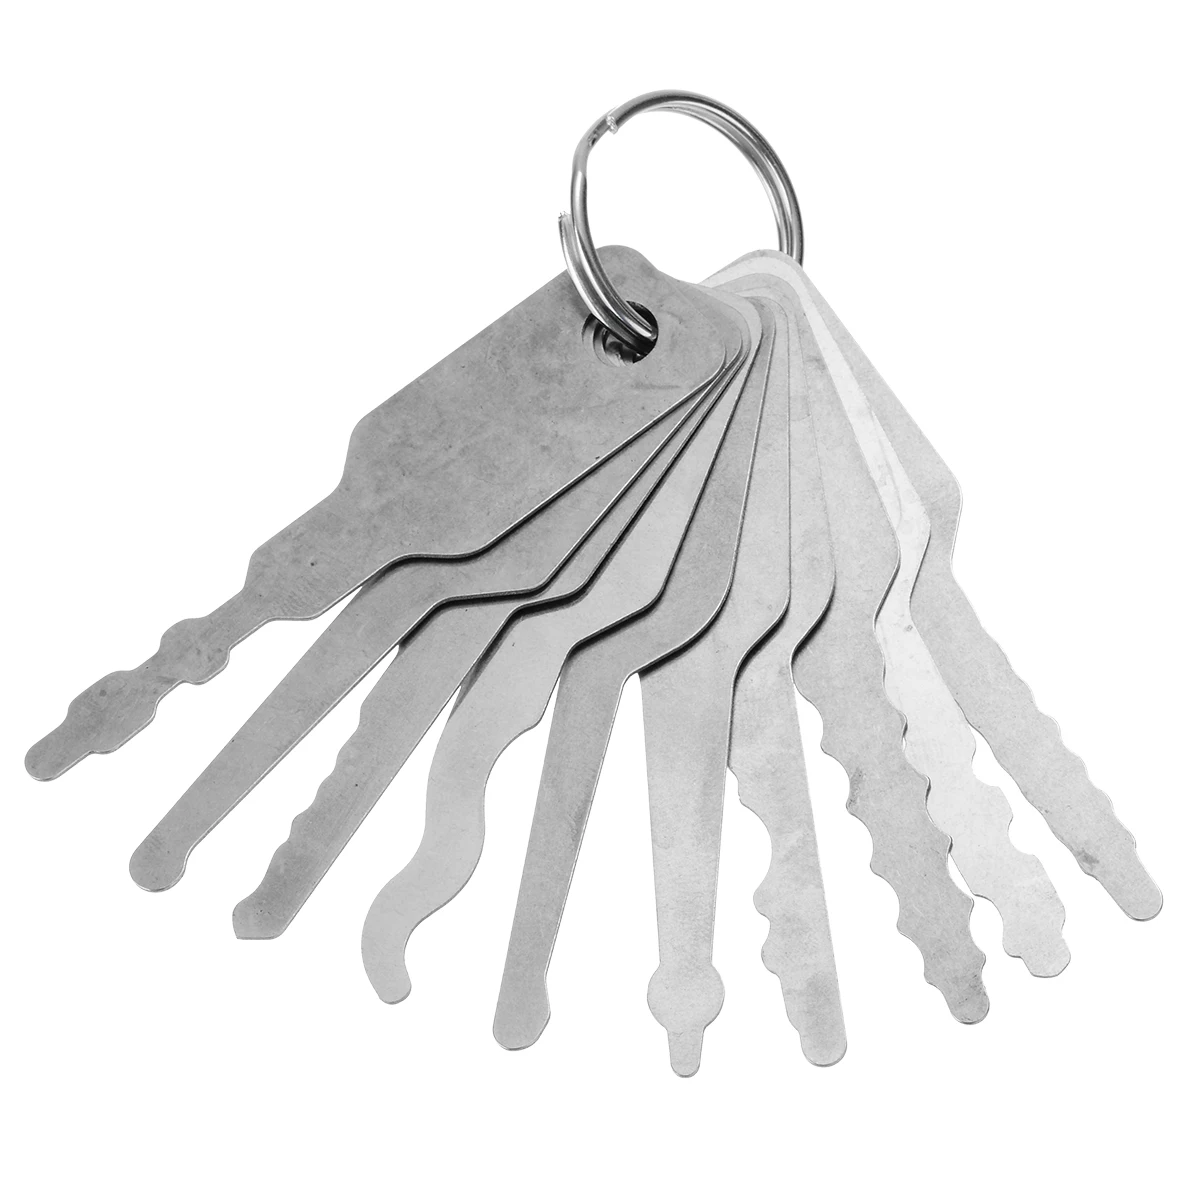 

Mayitr 10Pcs Car Lock Out Emergency Unlock Door Open Keys Tool Kit Universal Car Locks & Latches Accessories Repair Tools